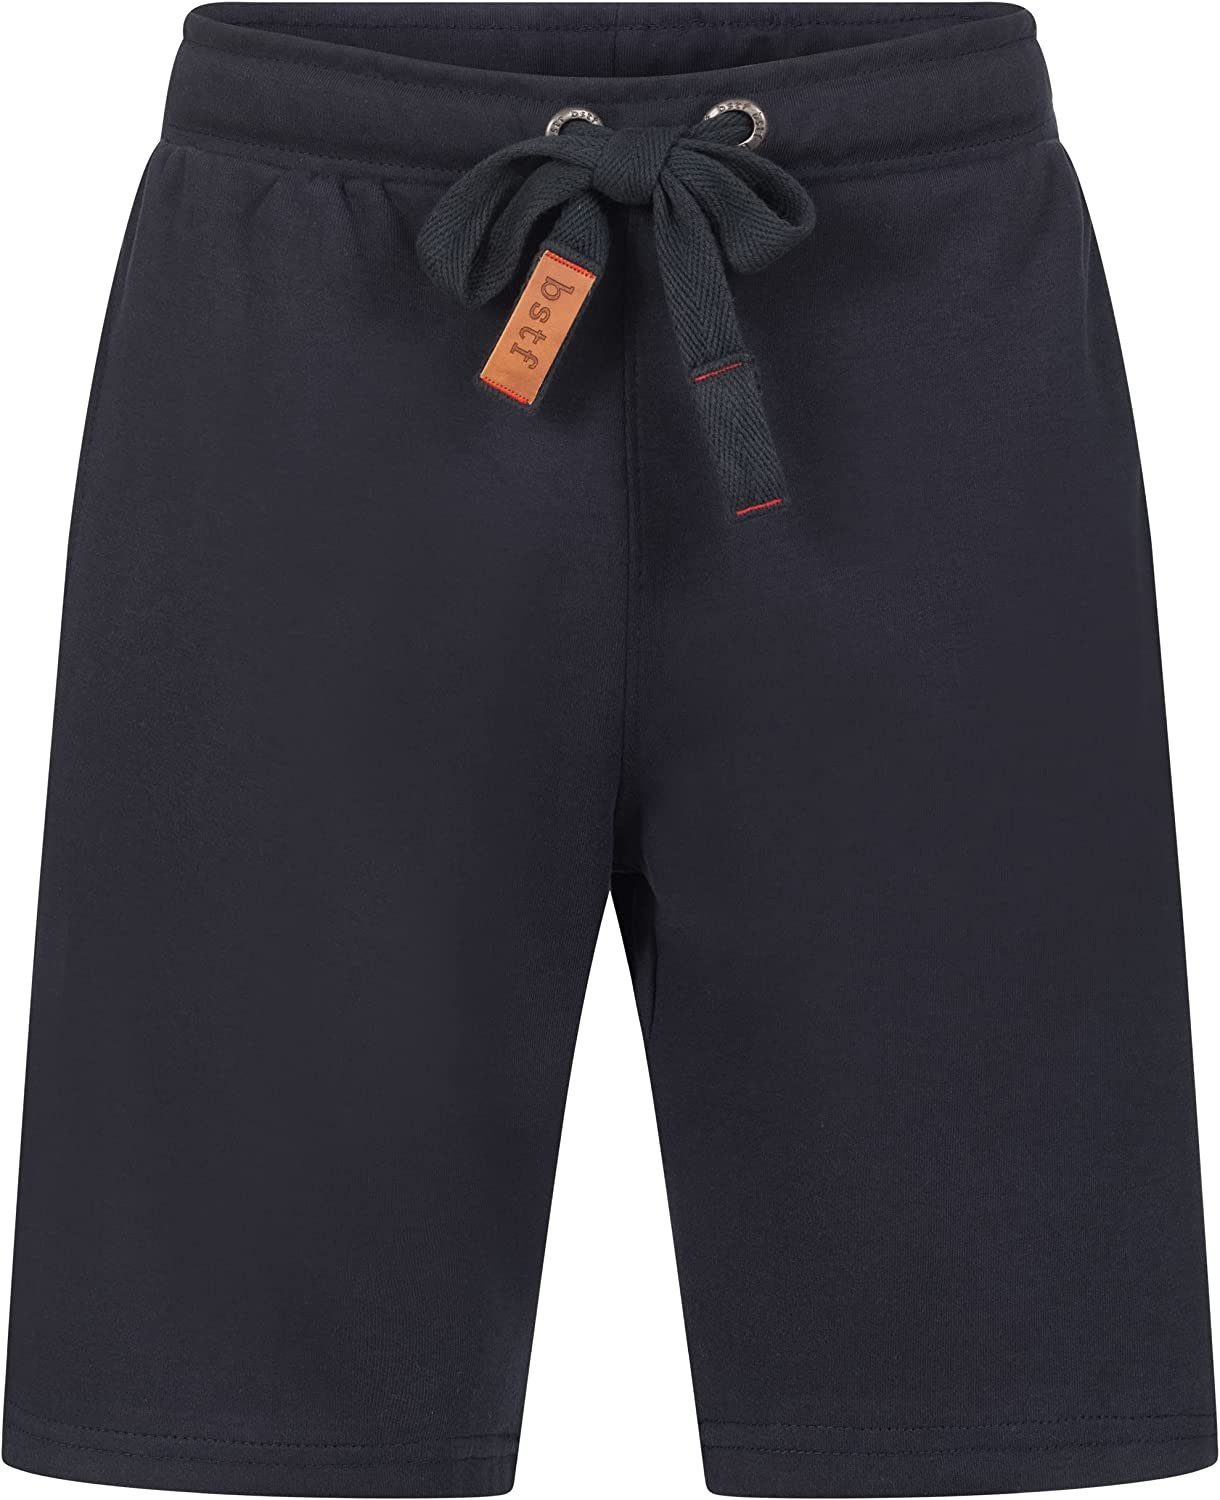 Bermuda aus Shorts Wyld Herren Shorts Dunkelblau Hose Basisstoff Baumwolle Kurze